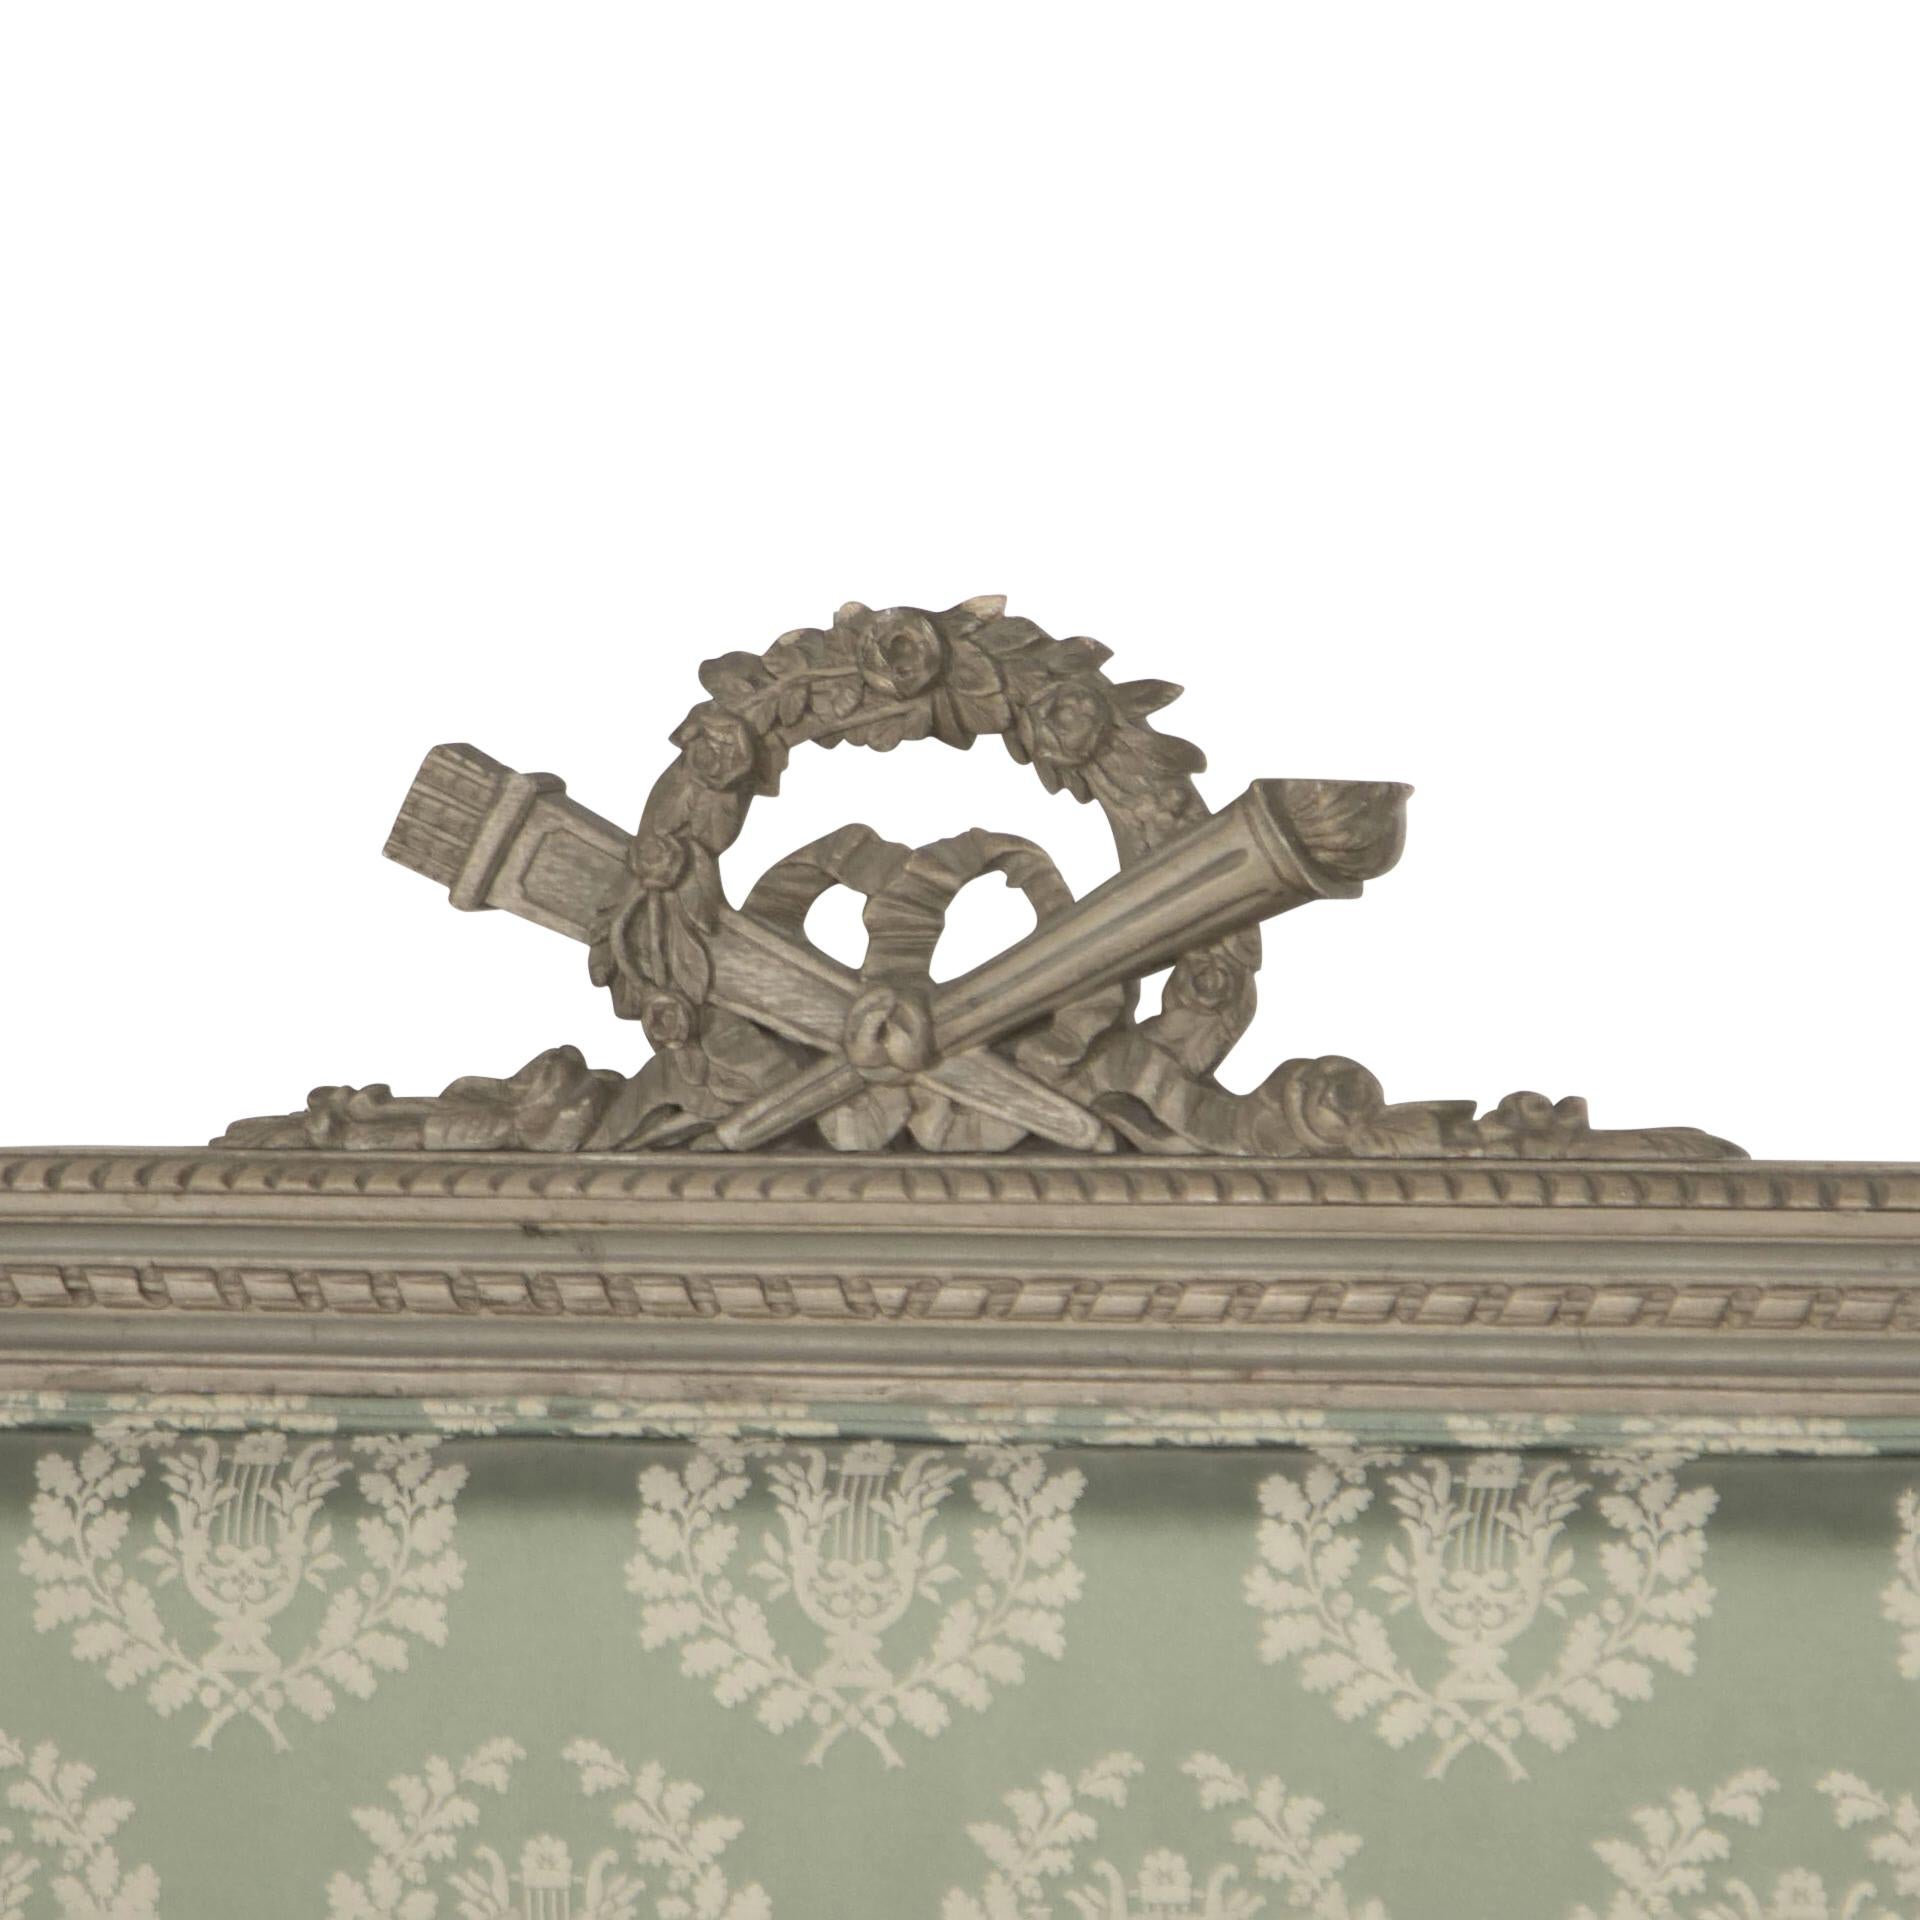 Lit français du 19ème siècle de style Louis XVI, décor sculpté, peint, garni d'une couronne de laurier vintage. 
Design fabric by Design Archive.